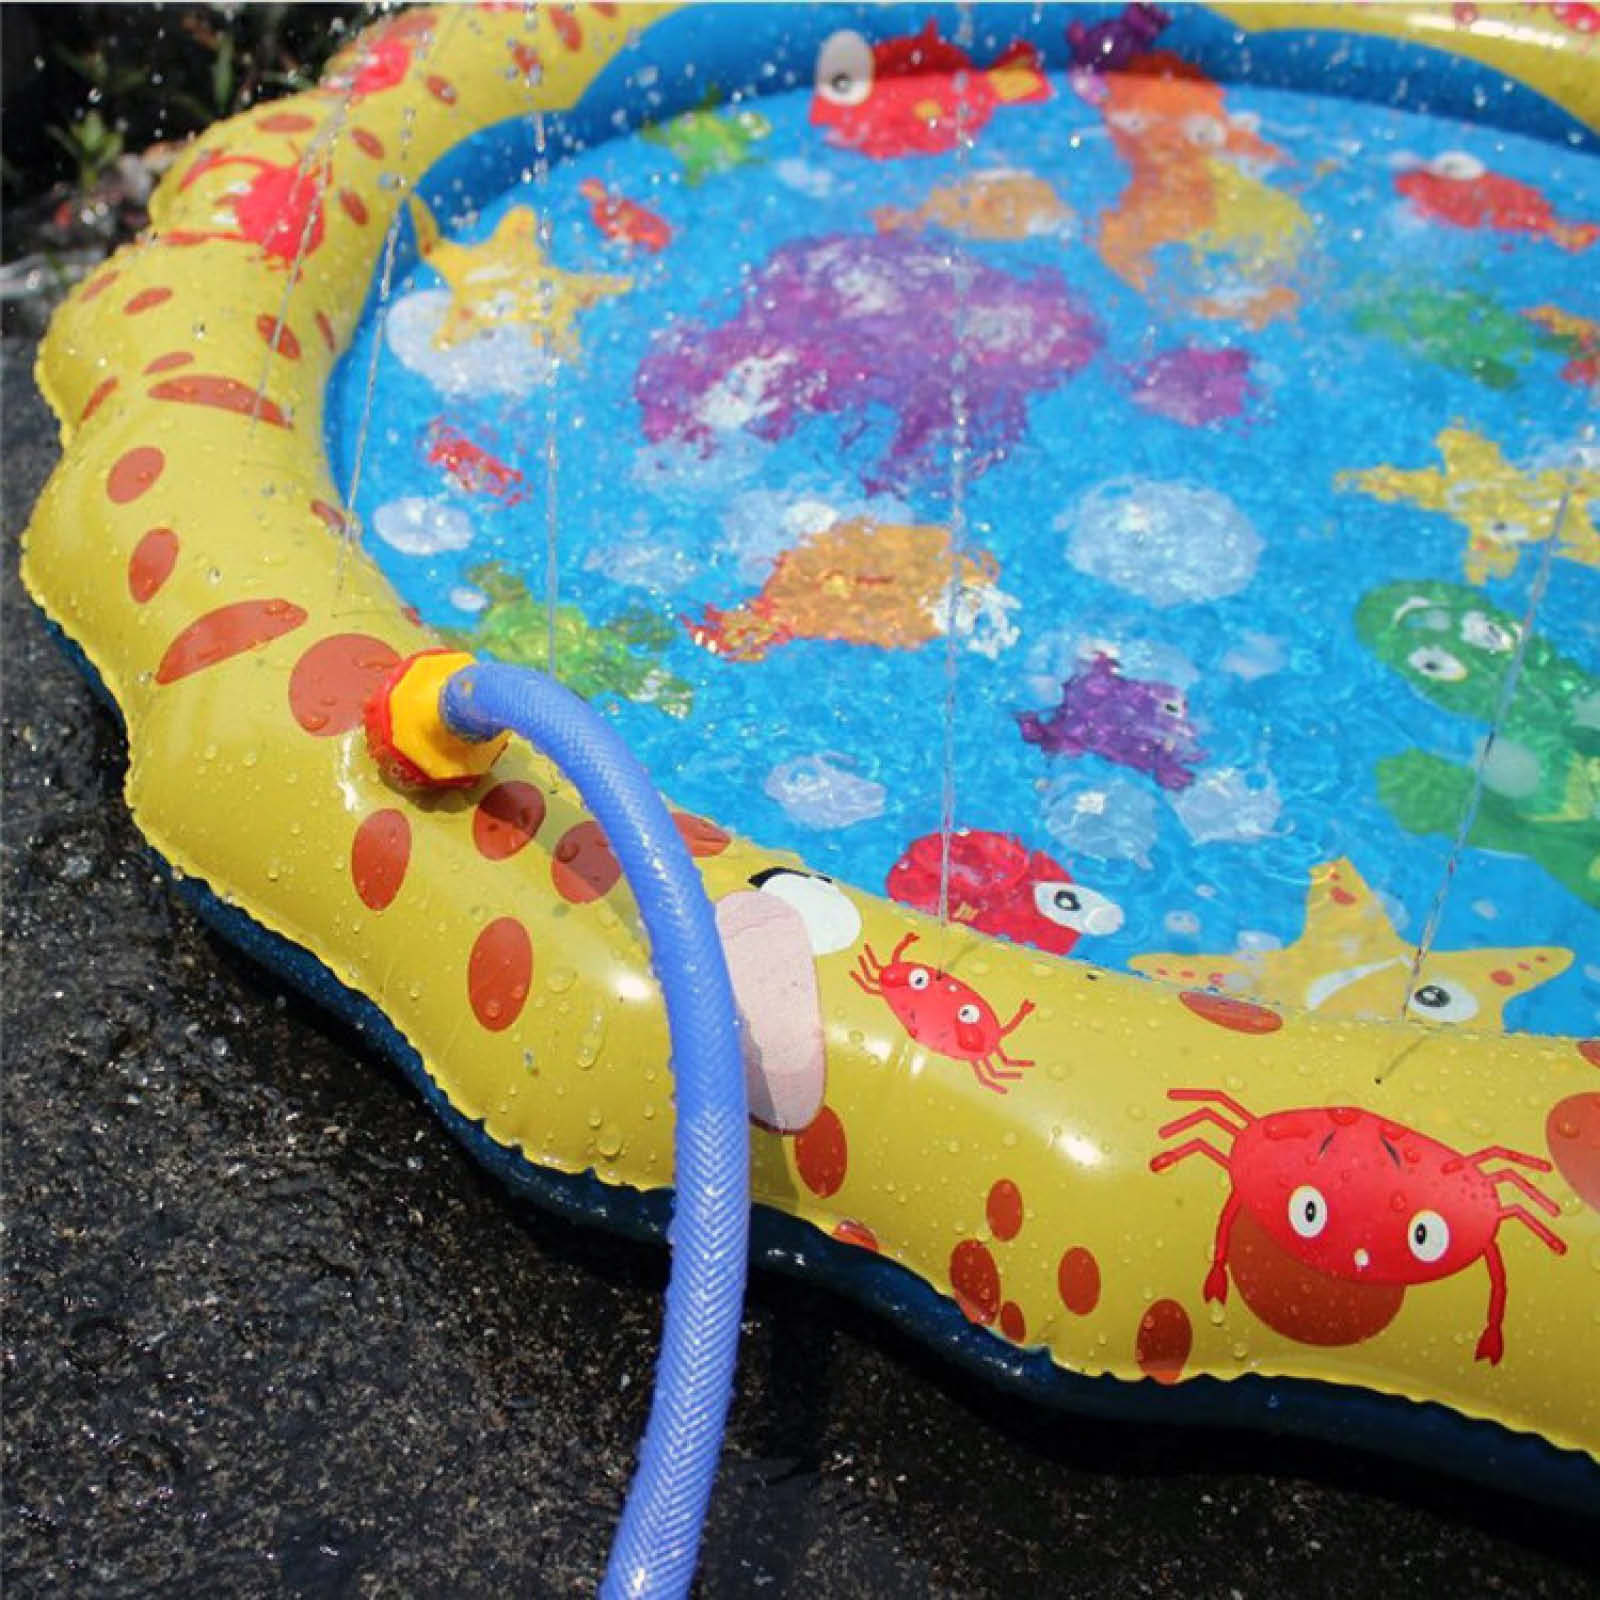 Veroman 幼児用 プール 直径100cm 噴水 ホースに繋ぐだけ 水遊び プレイマット 庭 シャワー 子供用 Veroman Jp 通販 Yahoo ショッピング